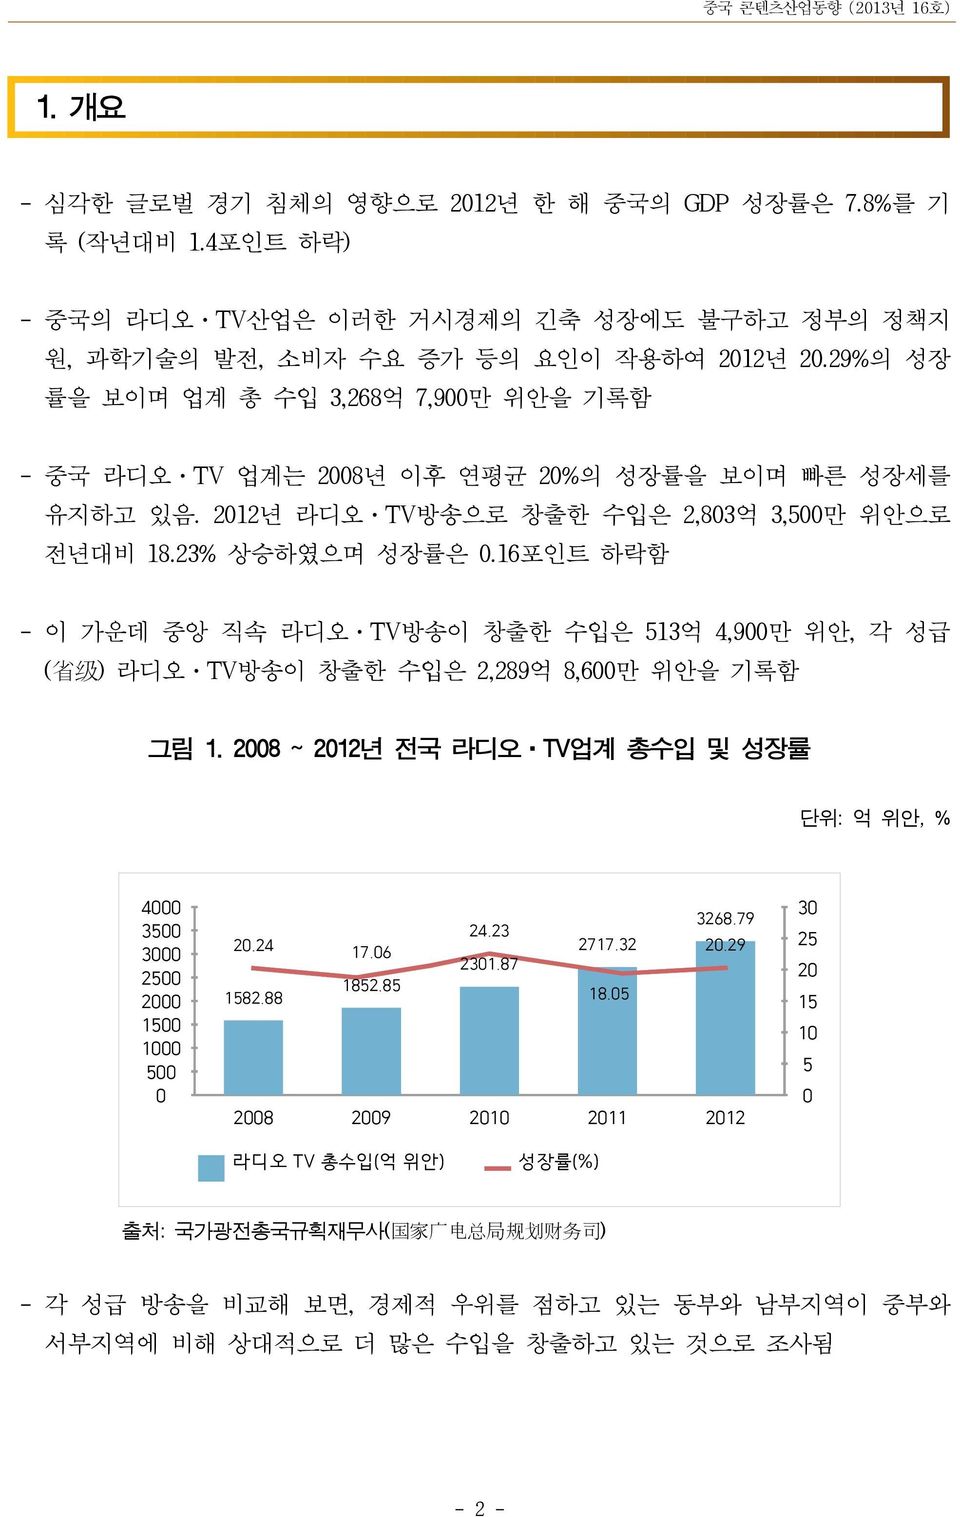 16포인트 하락함 - 이 가운데 중앙 직속 라디오 TV방송이 창출한 수입은 513억 4,900만 위안, 각 성급 ( 省 级 ) 라디오 TV방송이 창출한 수입은 2,289억 8,600만 위안을 기록함 그림 1.